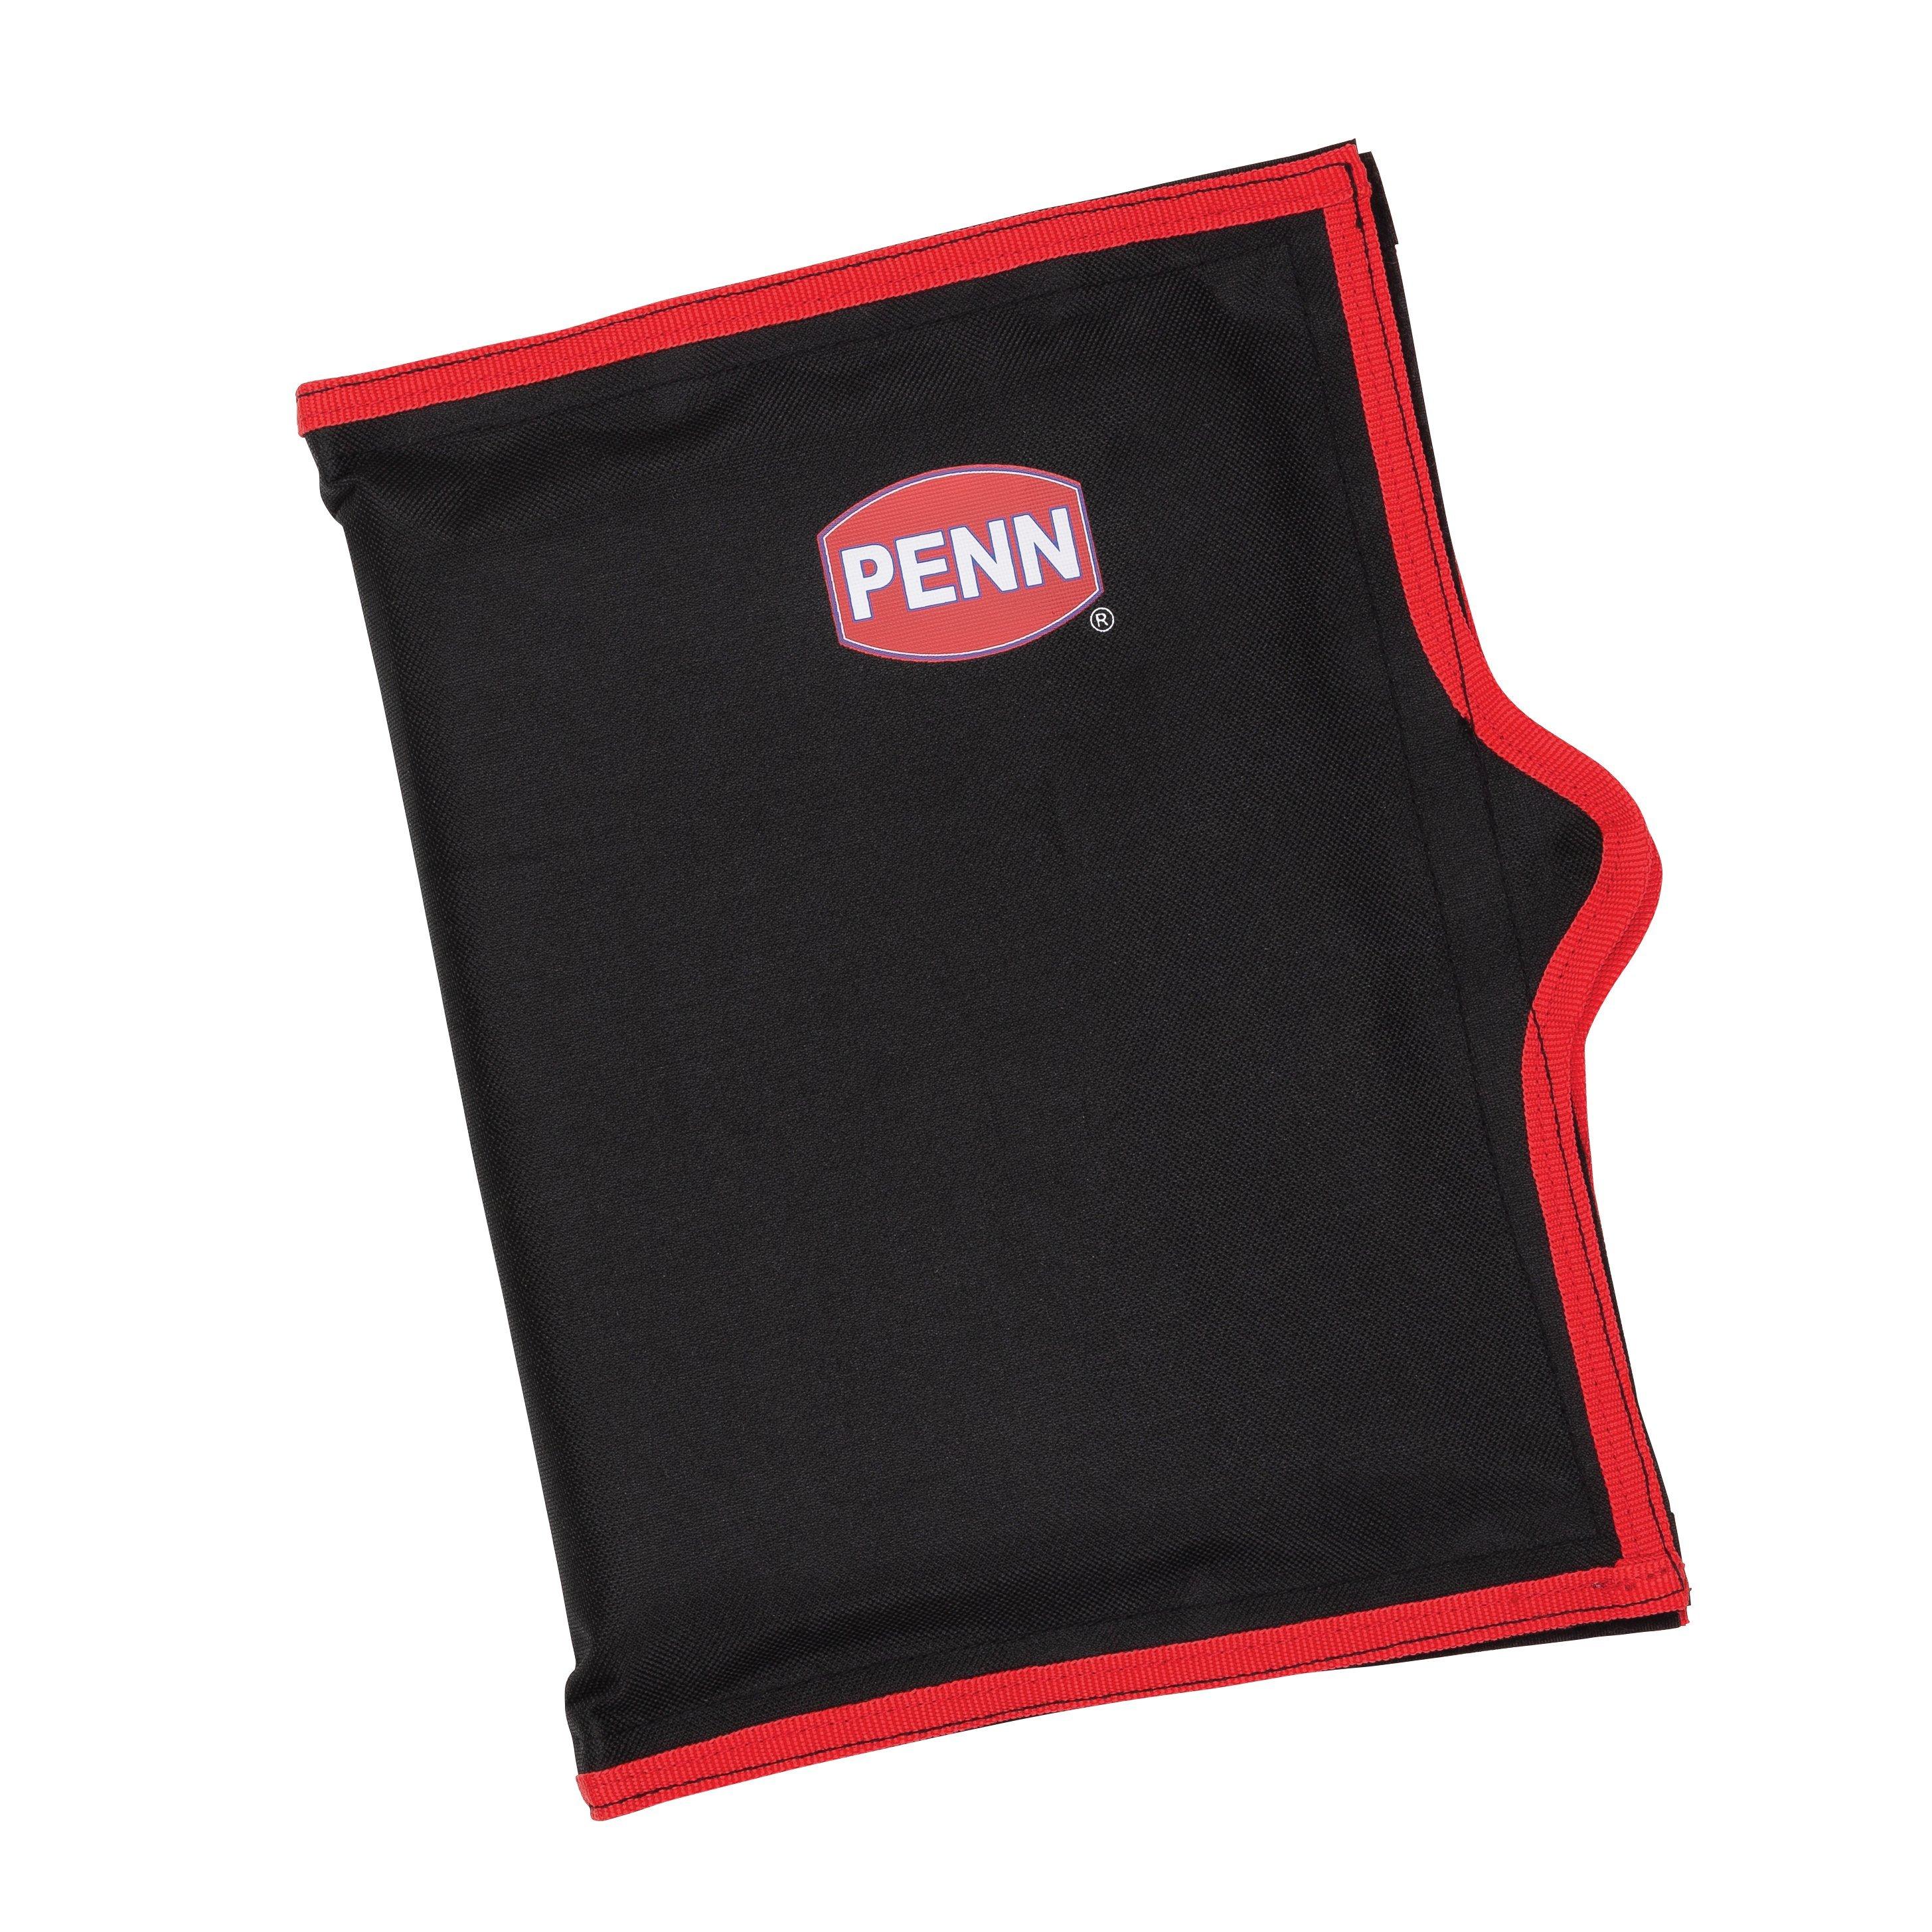 Penn Rod Bag 165 - Veals Mail Order